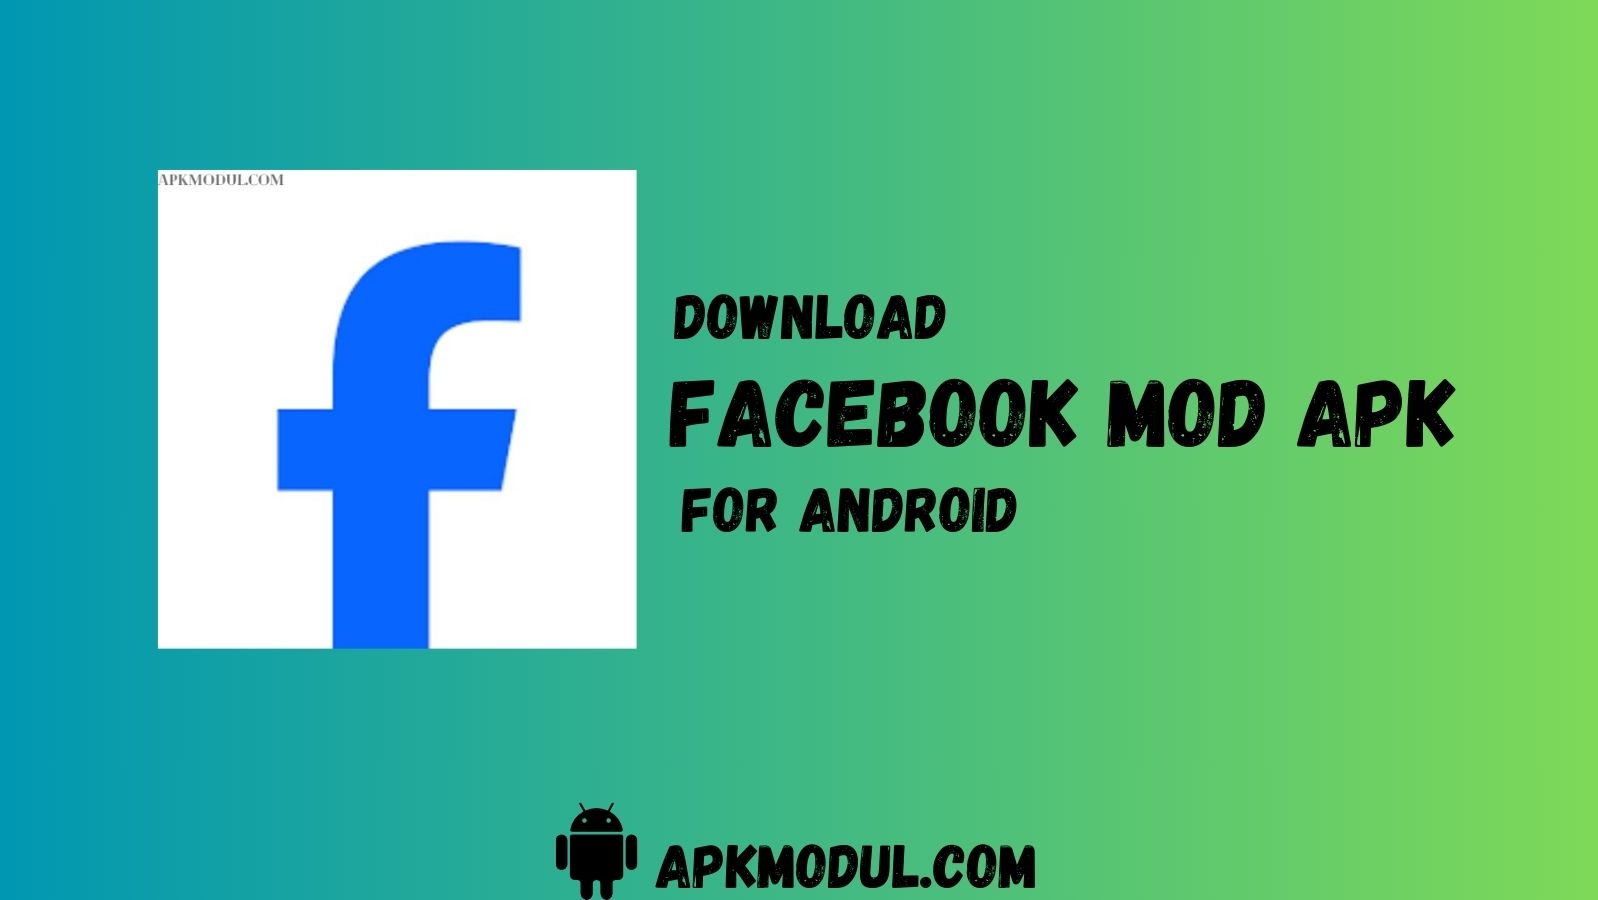 Facebook MOD App